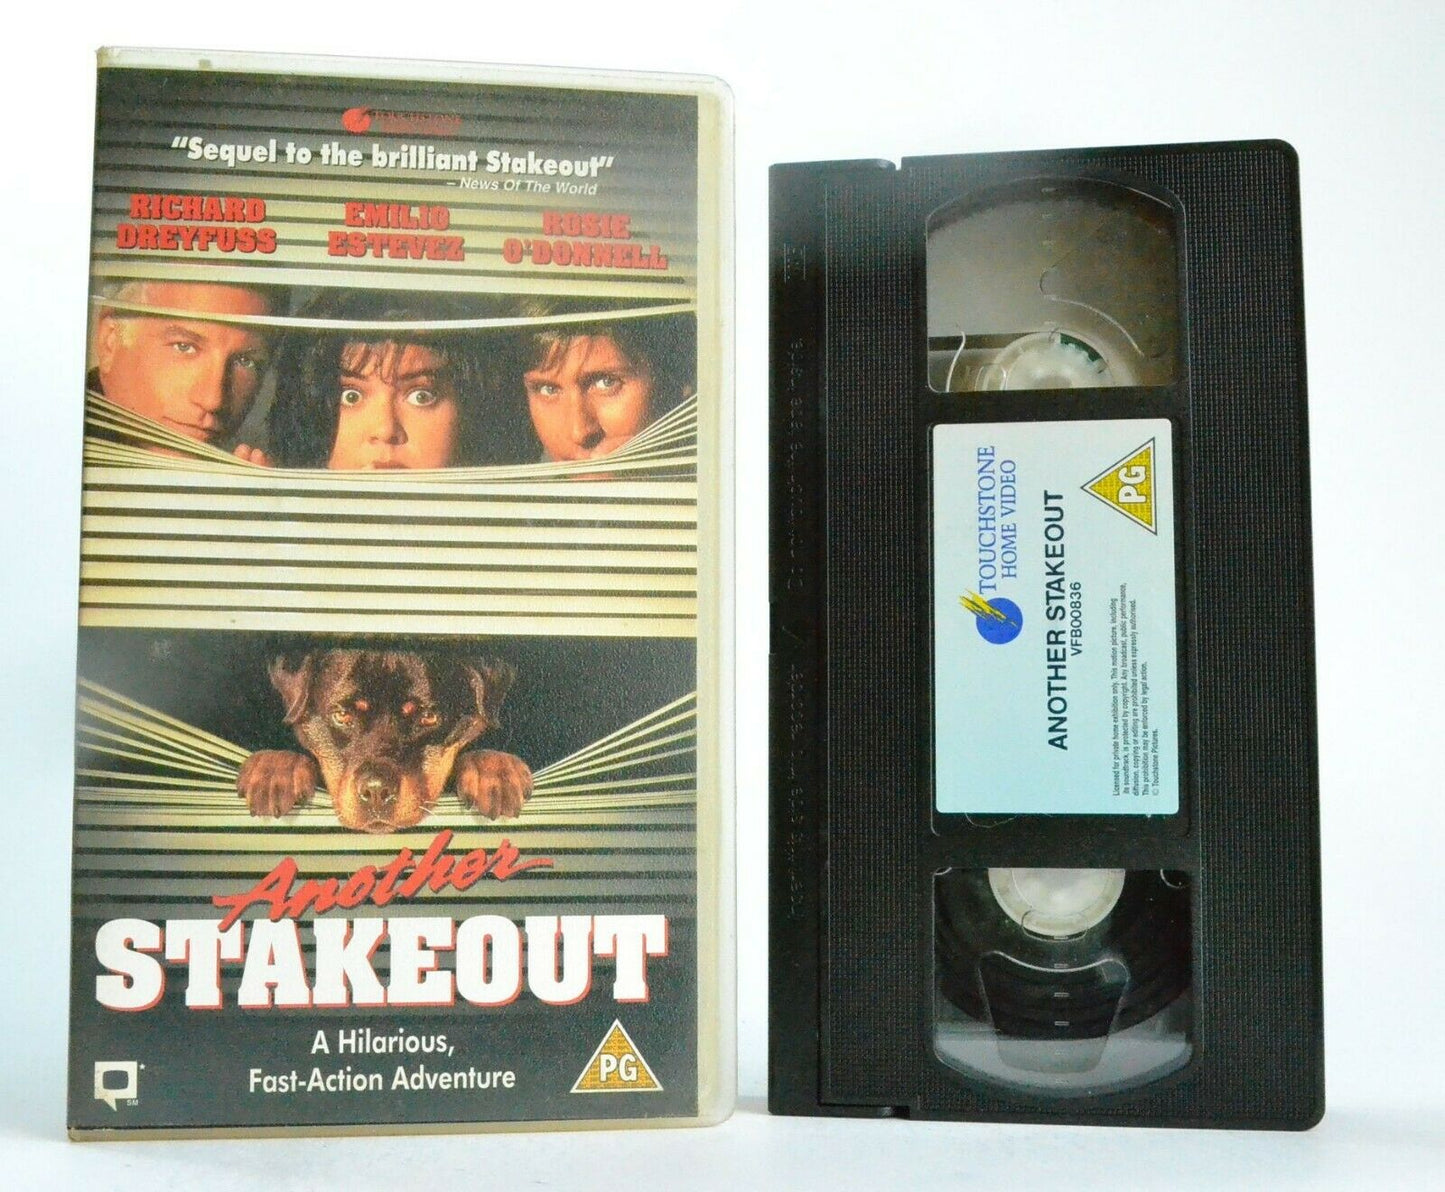 Another Stakeout - Action Adventure - Richard Dreyfuss/Emilio Estevez - Pal VHS-